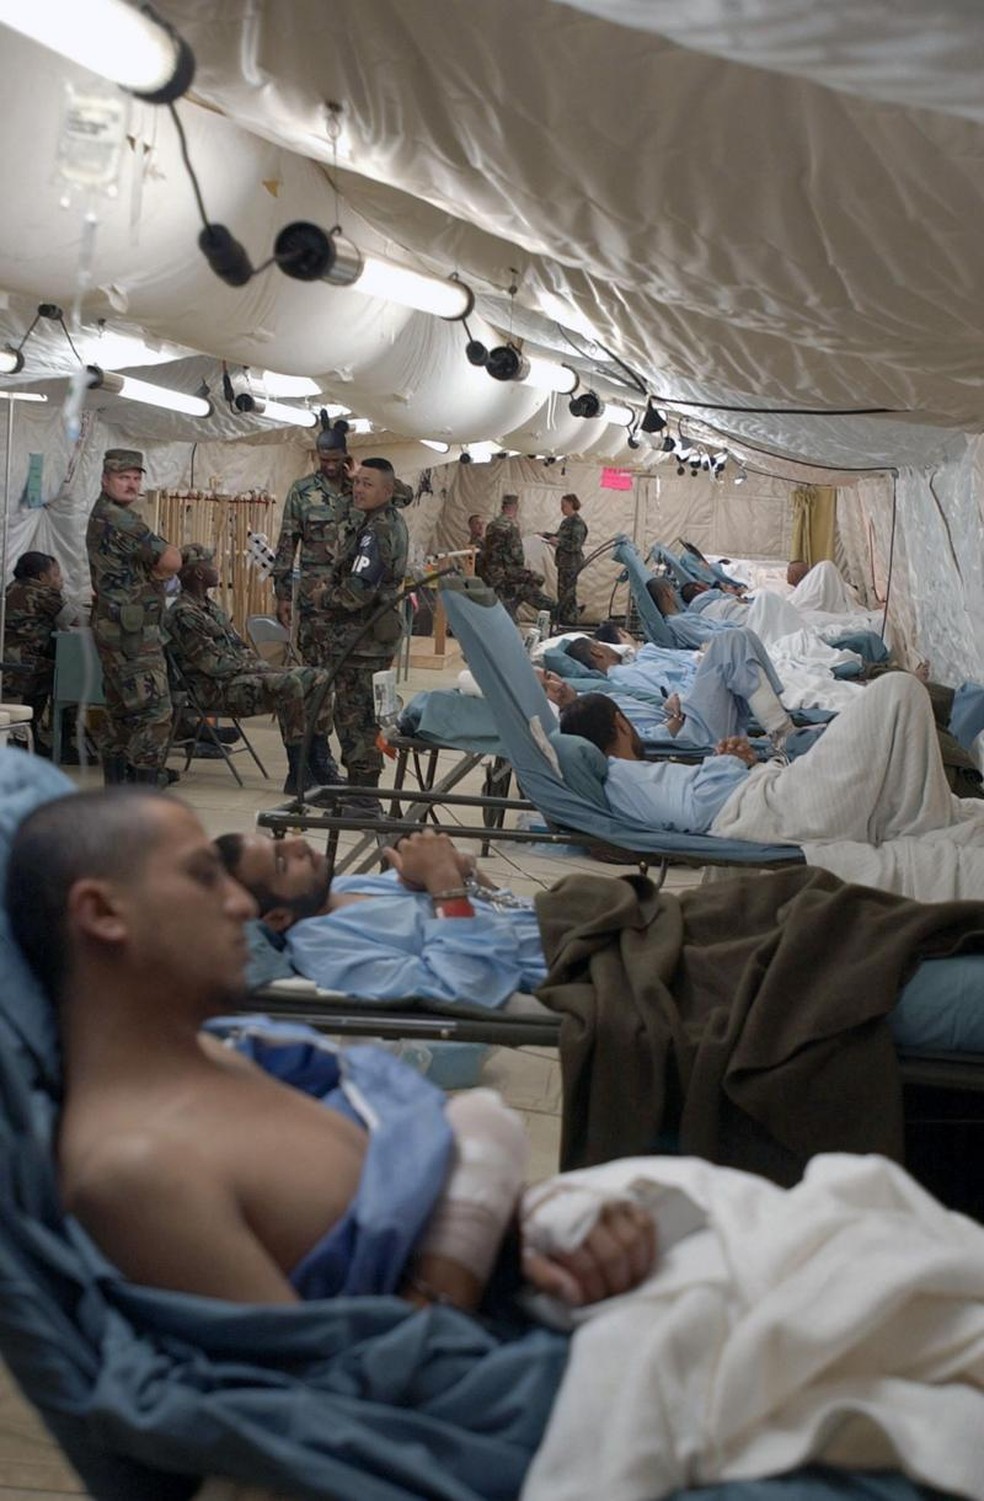 Havia uma instalação hospitalar em Camp X Ray, o Fleet Hospital Twenty, onde vários dos detidos foram levados na chegada a Guantánamo. Mesmo quando estavam nas macas, os prisioneiros permaneciam com pés e mãos algemados. — Foto: SHANE T. MCCOY/USMC via BBC